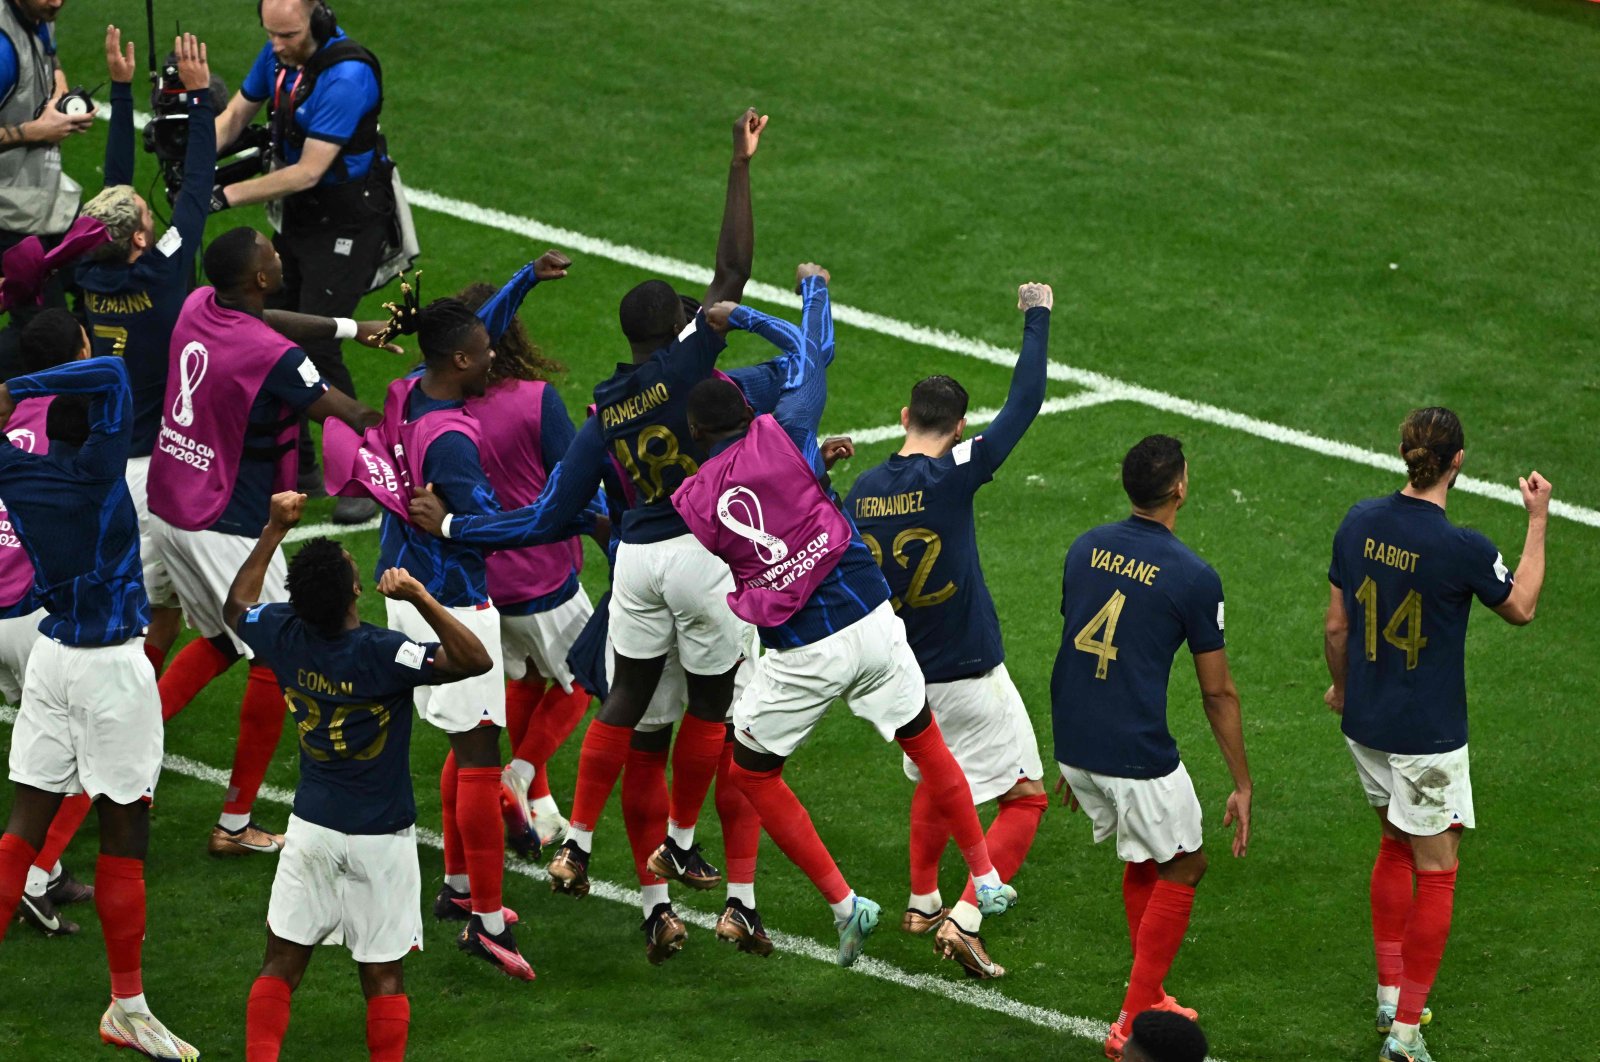 Pemegang Prancis ke semifinal Piala Dunia karena Kane gagal mengeksekusi penalti